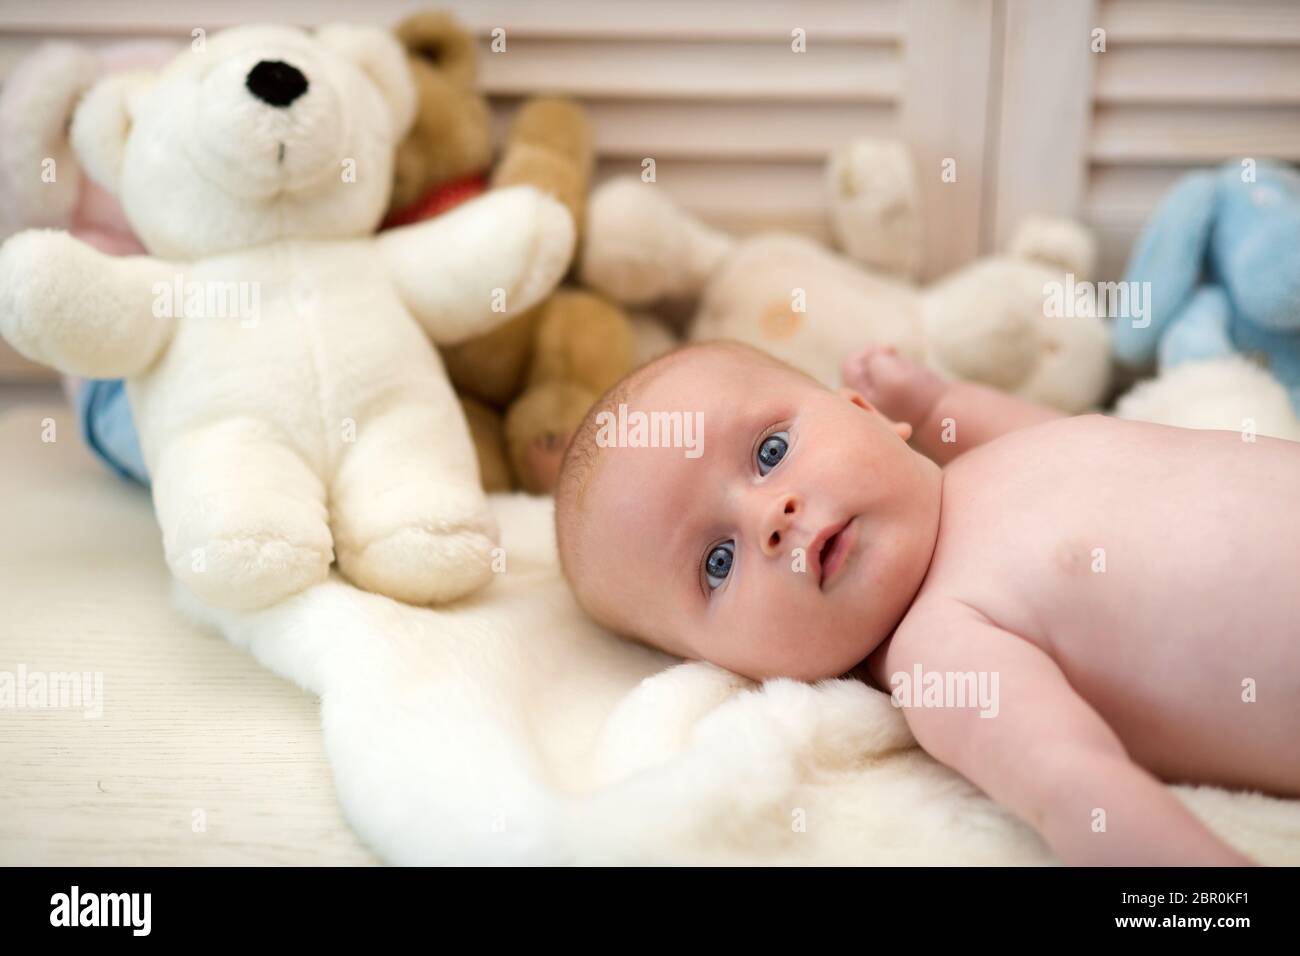 Bébé avec les yeux bleus et le visage surpris sur une couverture légère  avec des jouets sur fond, défoqué. Bébé couché sur une couette blanche. Bébé  garçon et son ours en peluche